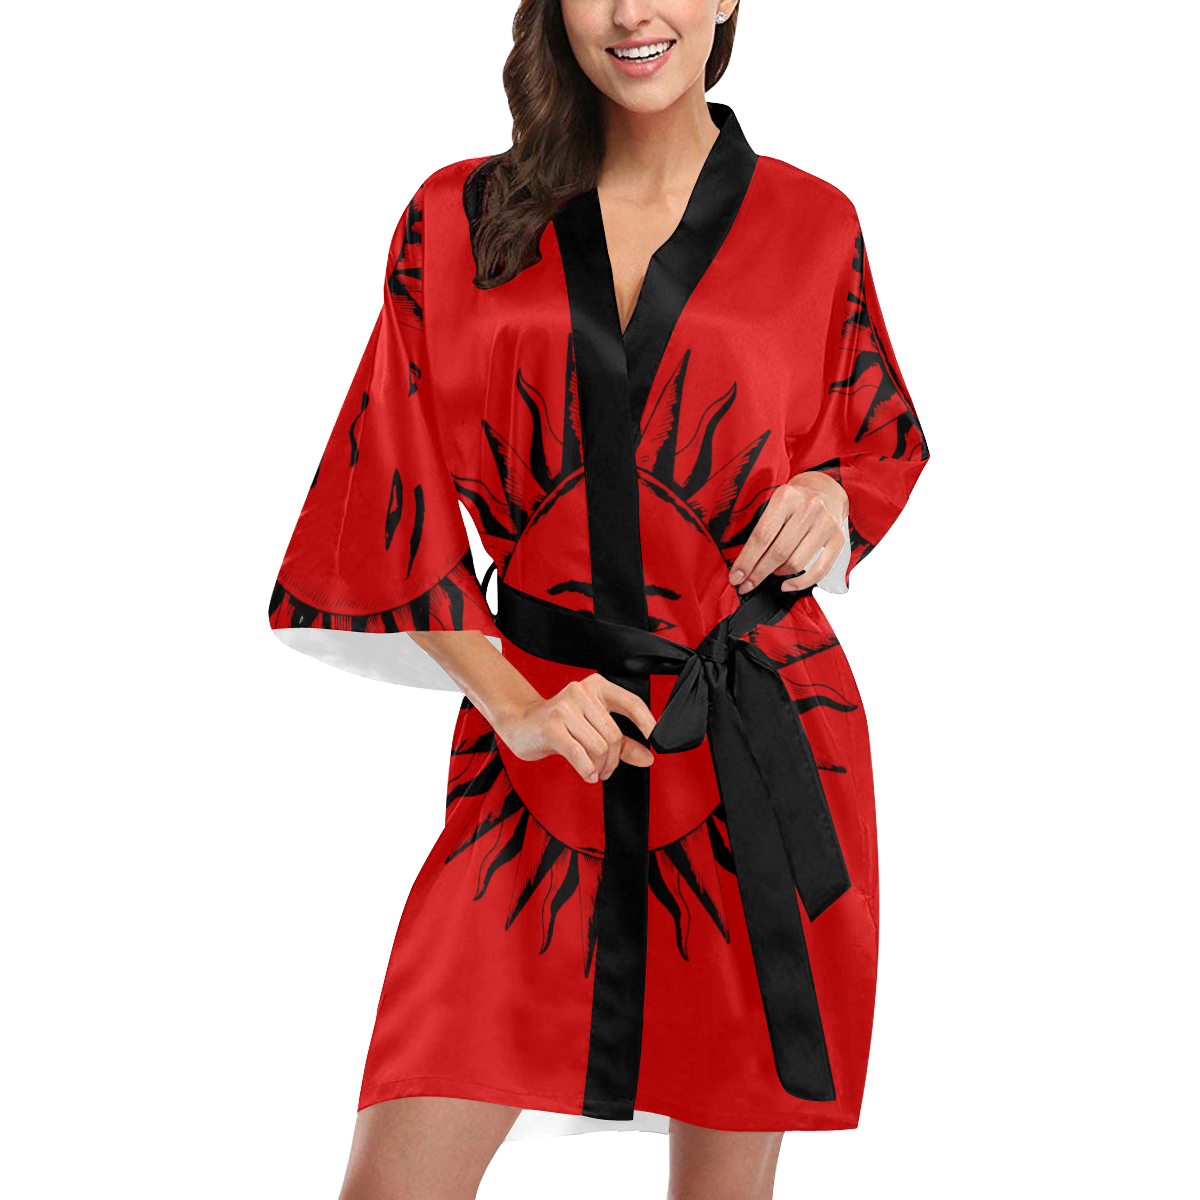 GOD Robe Red Kimono Robe